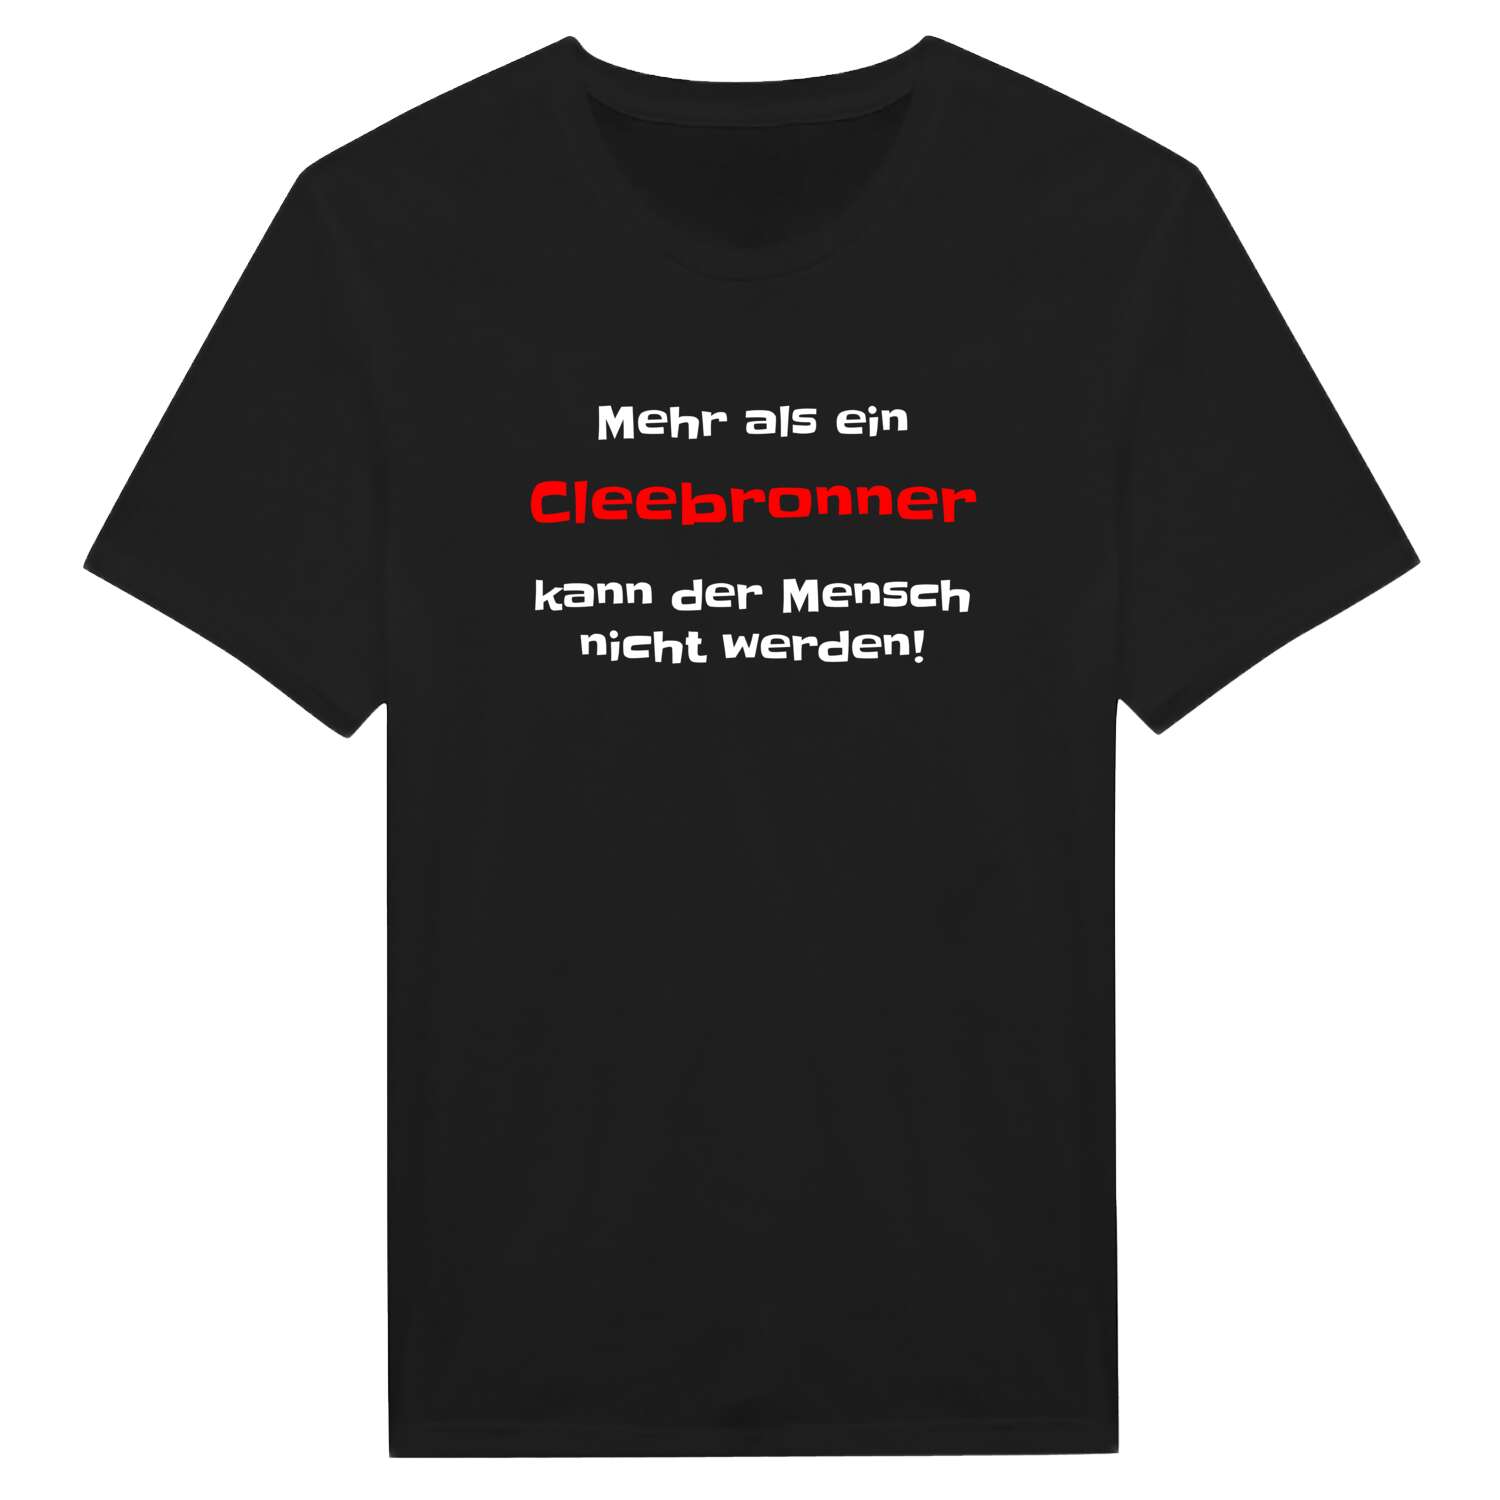 Cleebronn T-Shirt »Mehr als ein«